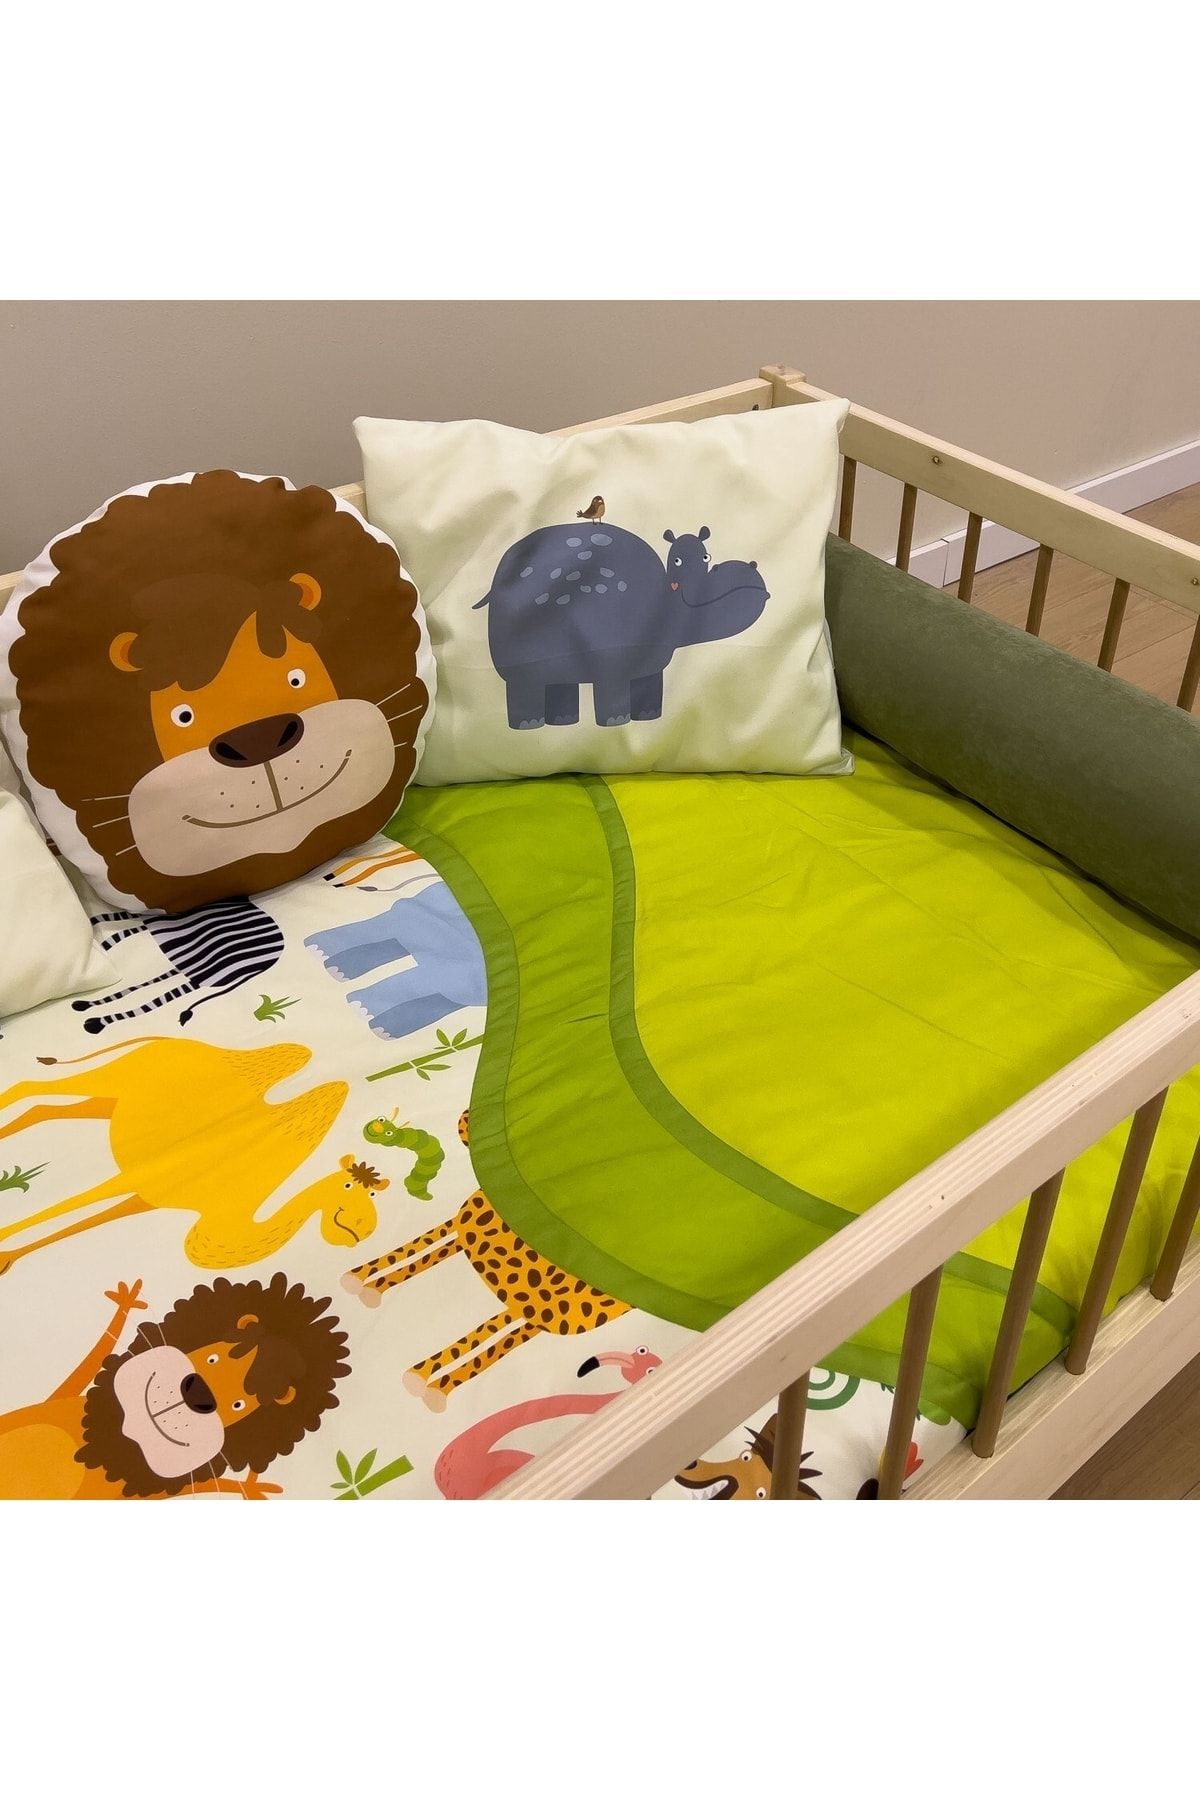 Meltem Smart Mia Montessori Çocuk Odası Uyku Seti Yatak Örtüsü - 100x200 Cm